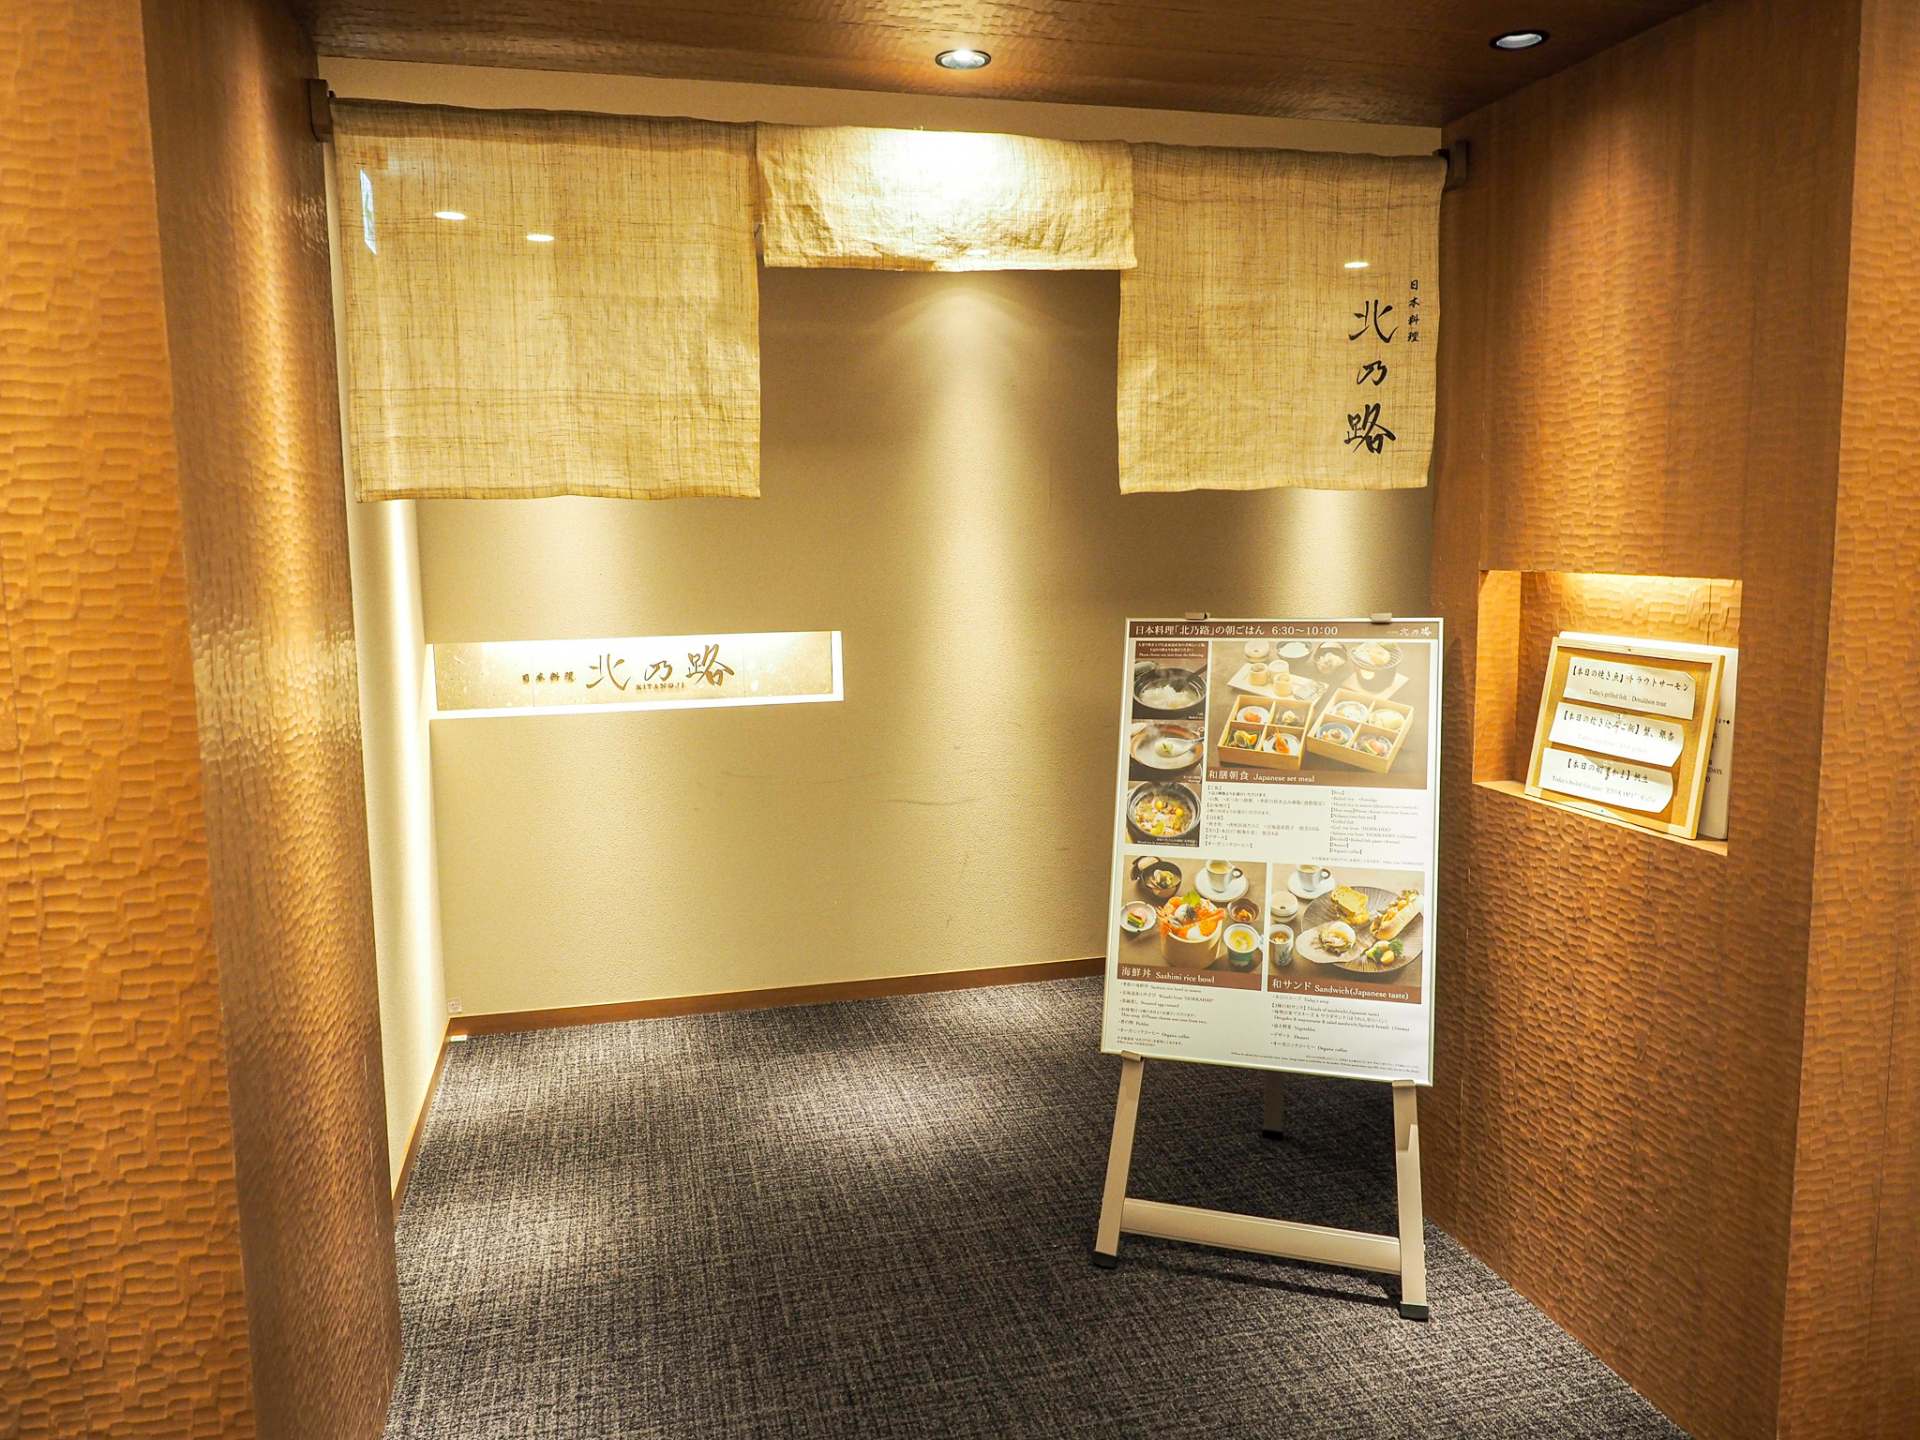 Japanese restaurant "Kitanoji" is open for breakfast, lunch and dinner.